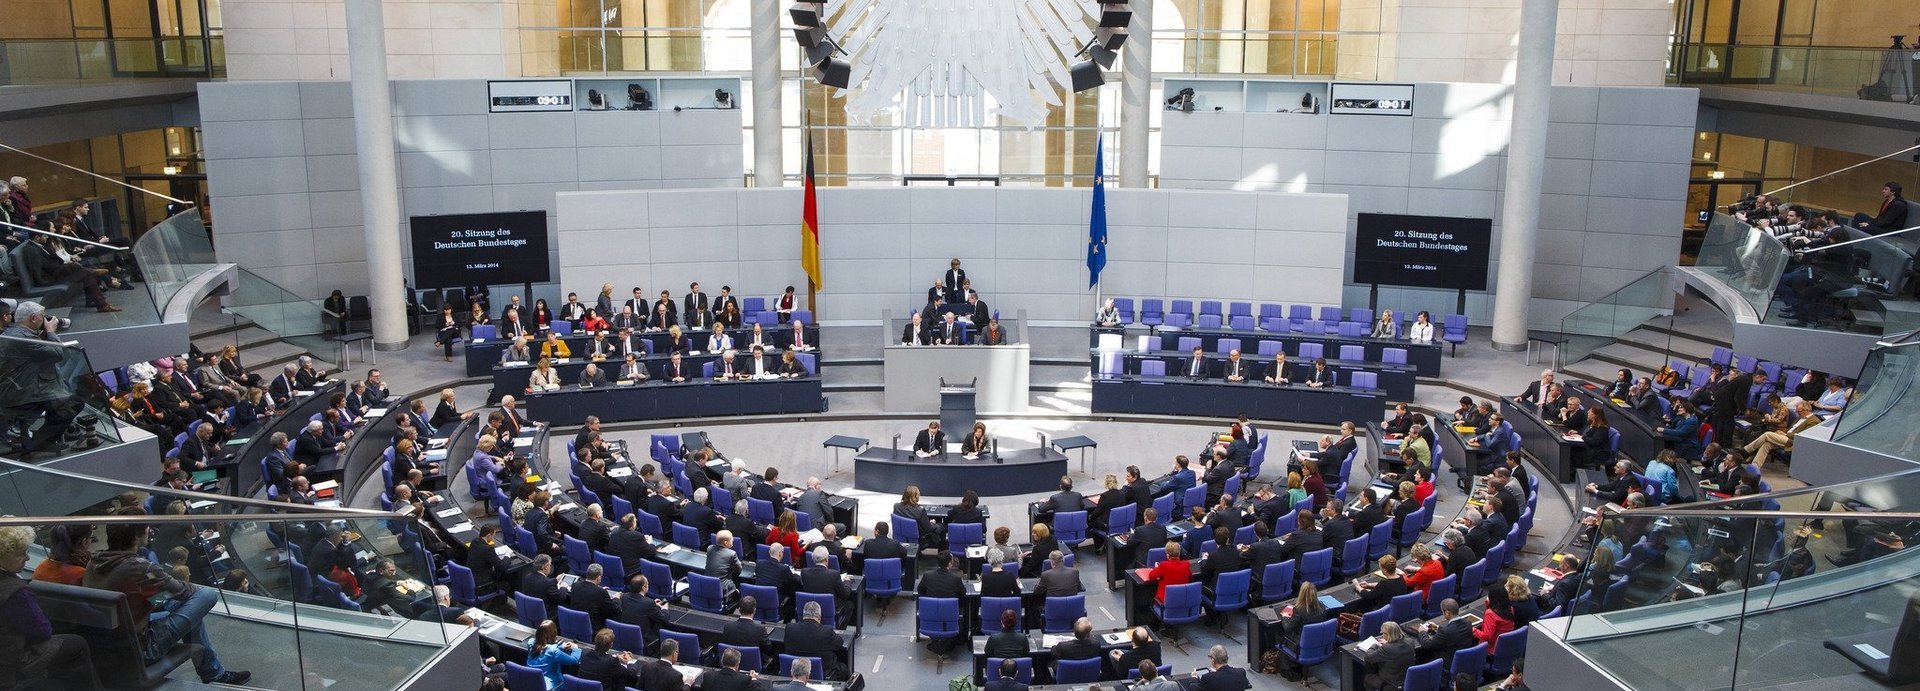 Weitansicht des Plenarsaals des deutschen Bundestages während einer Sitzung